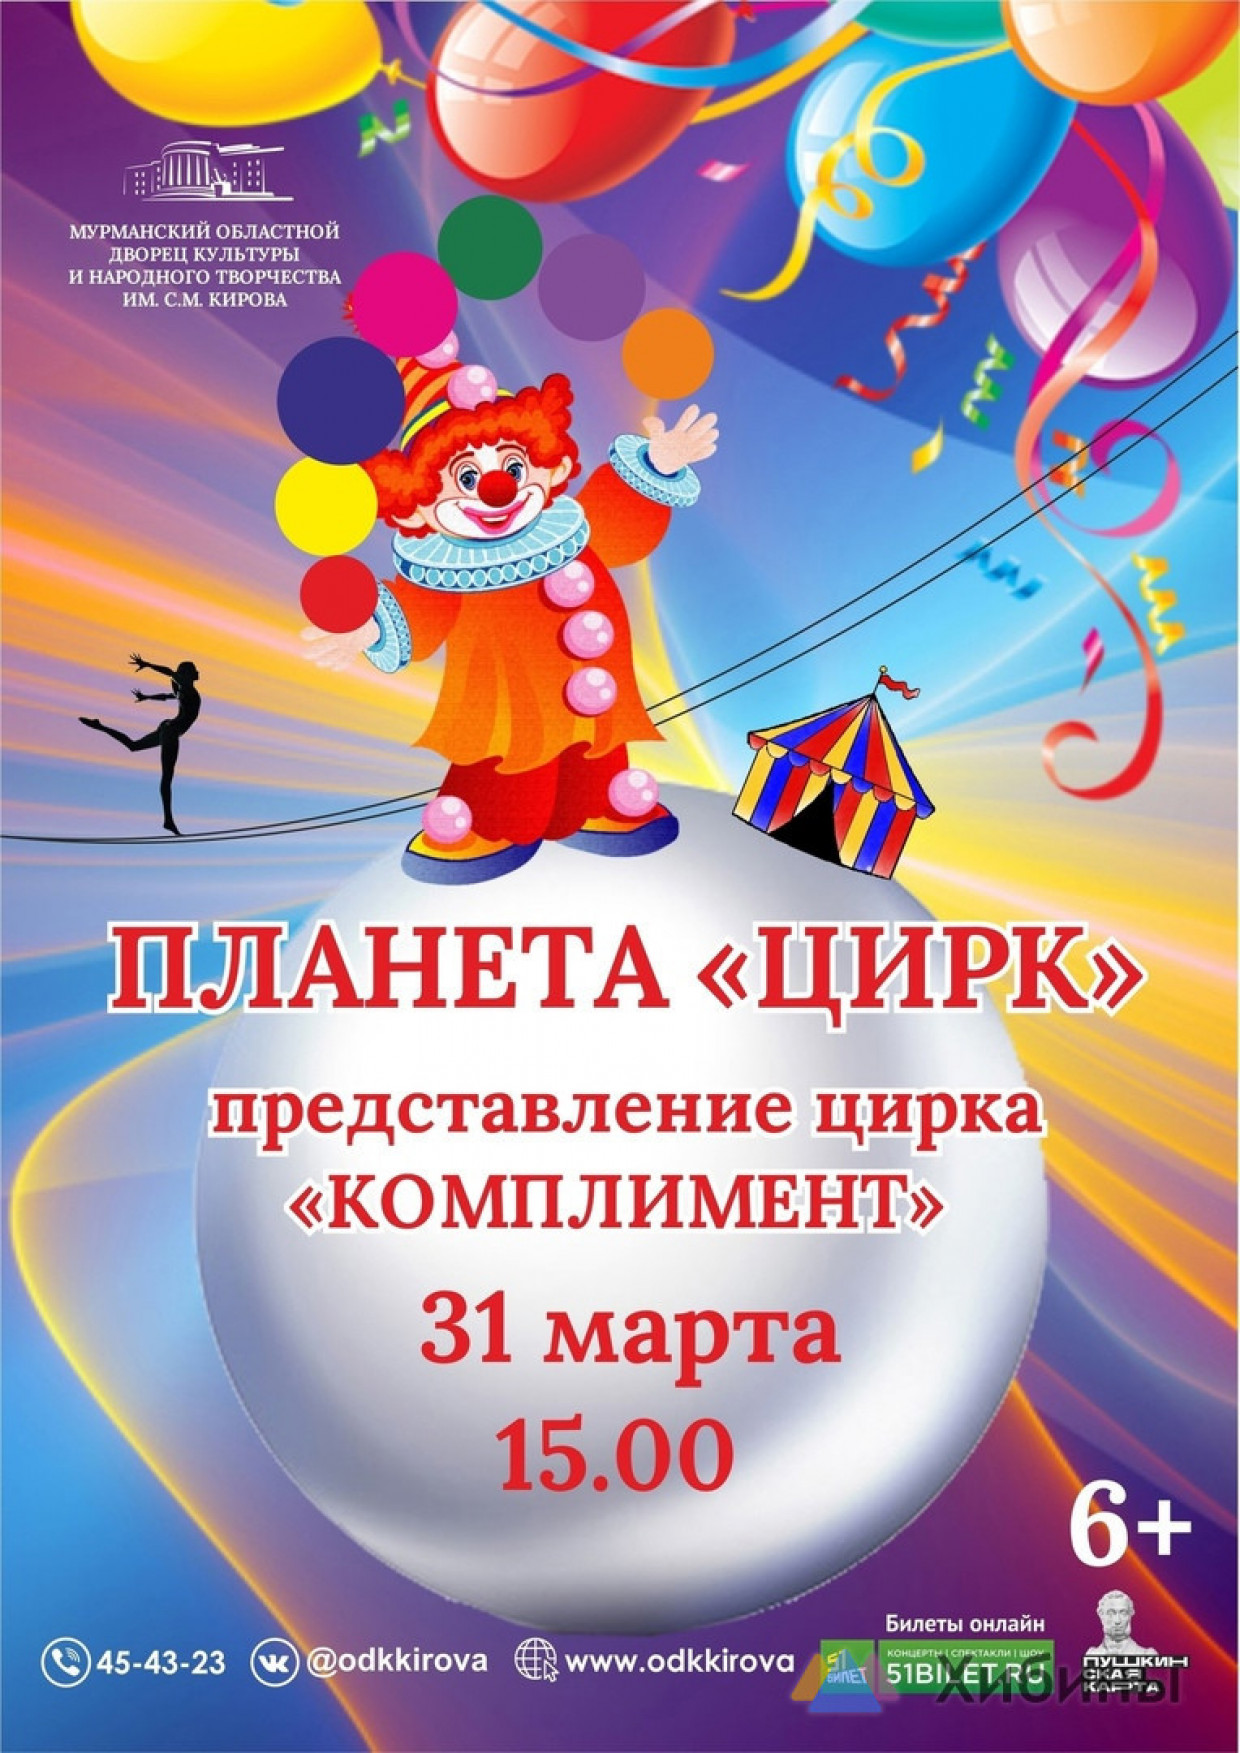 Культурный гид на неделю: лучшие концерты, театры и спортивные события в Мурманске